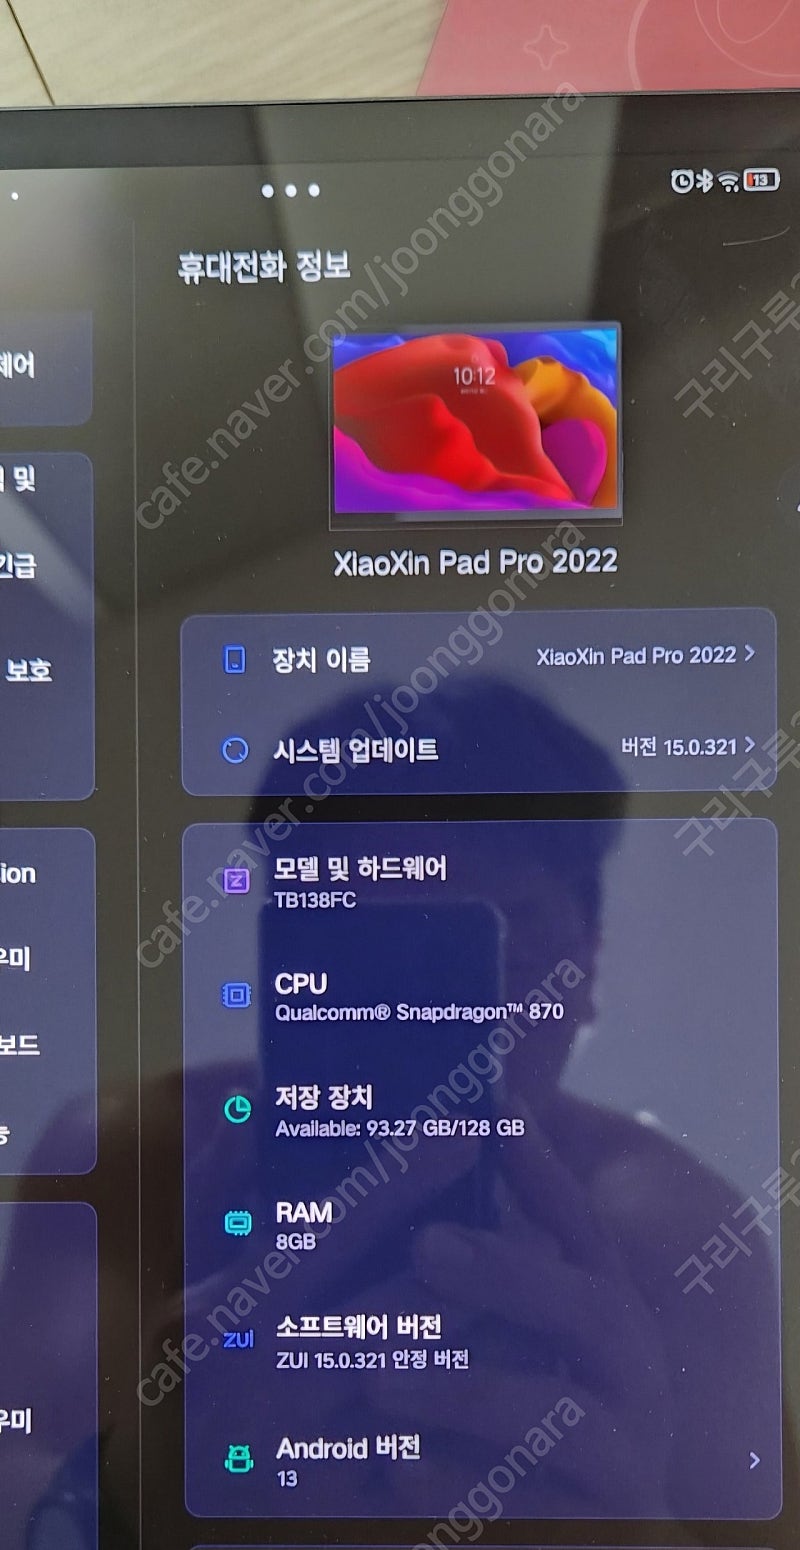 [광주/전주]샤오신패드 프로 2022(용팡이) & 미사용 정품펜(btp-131)